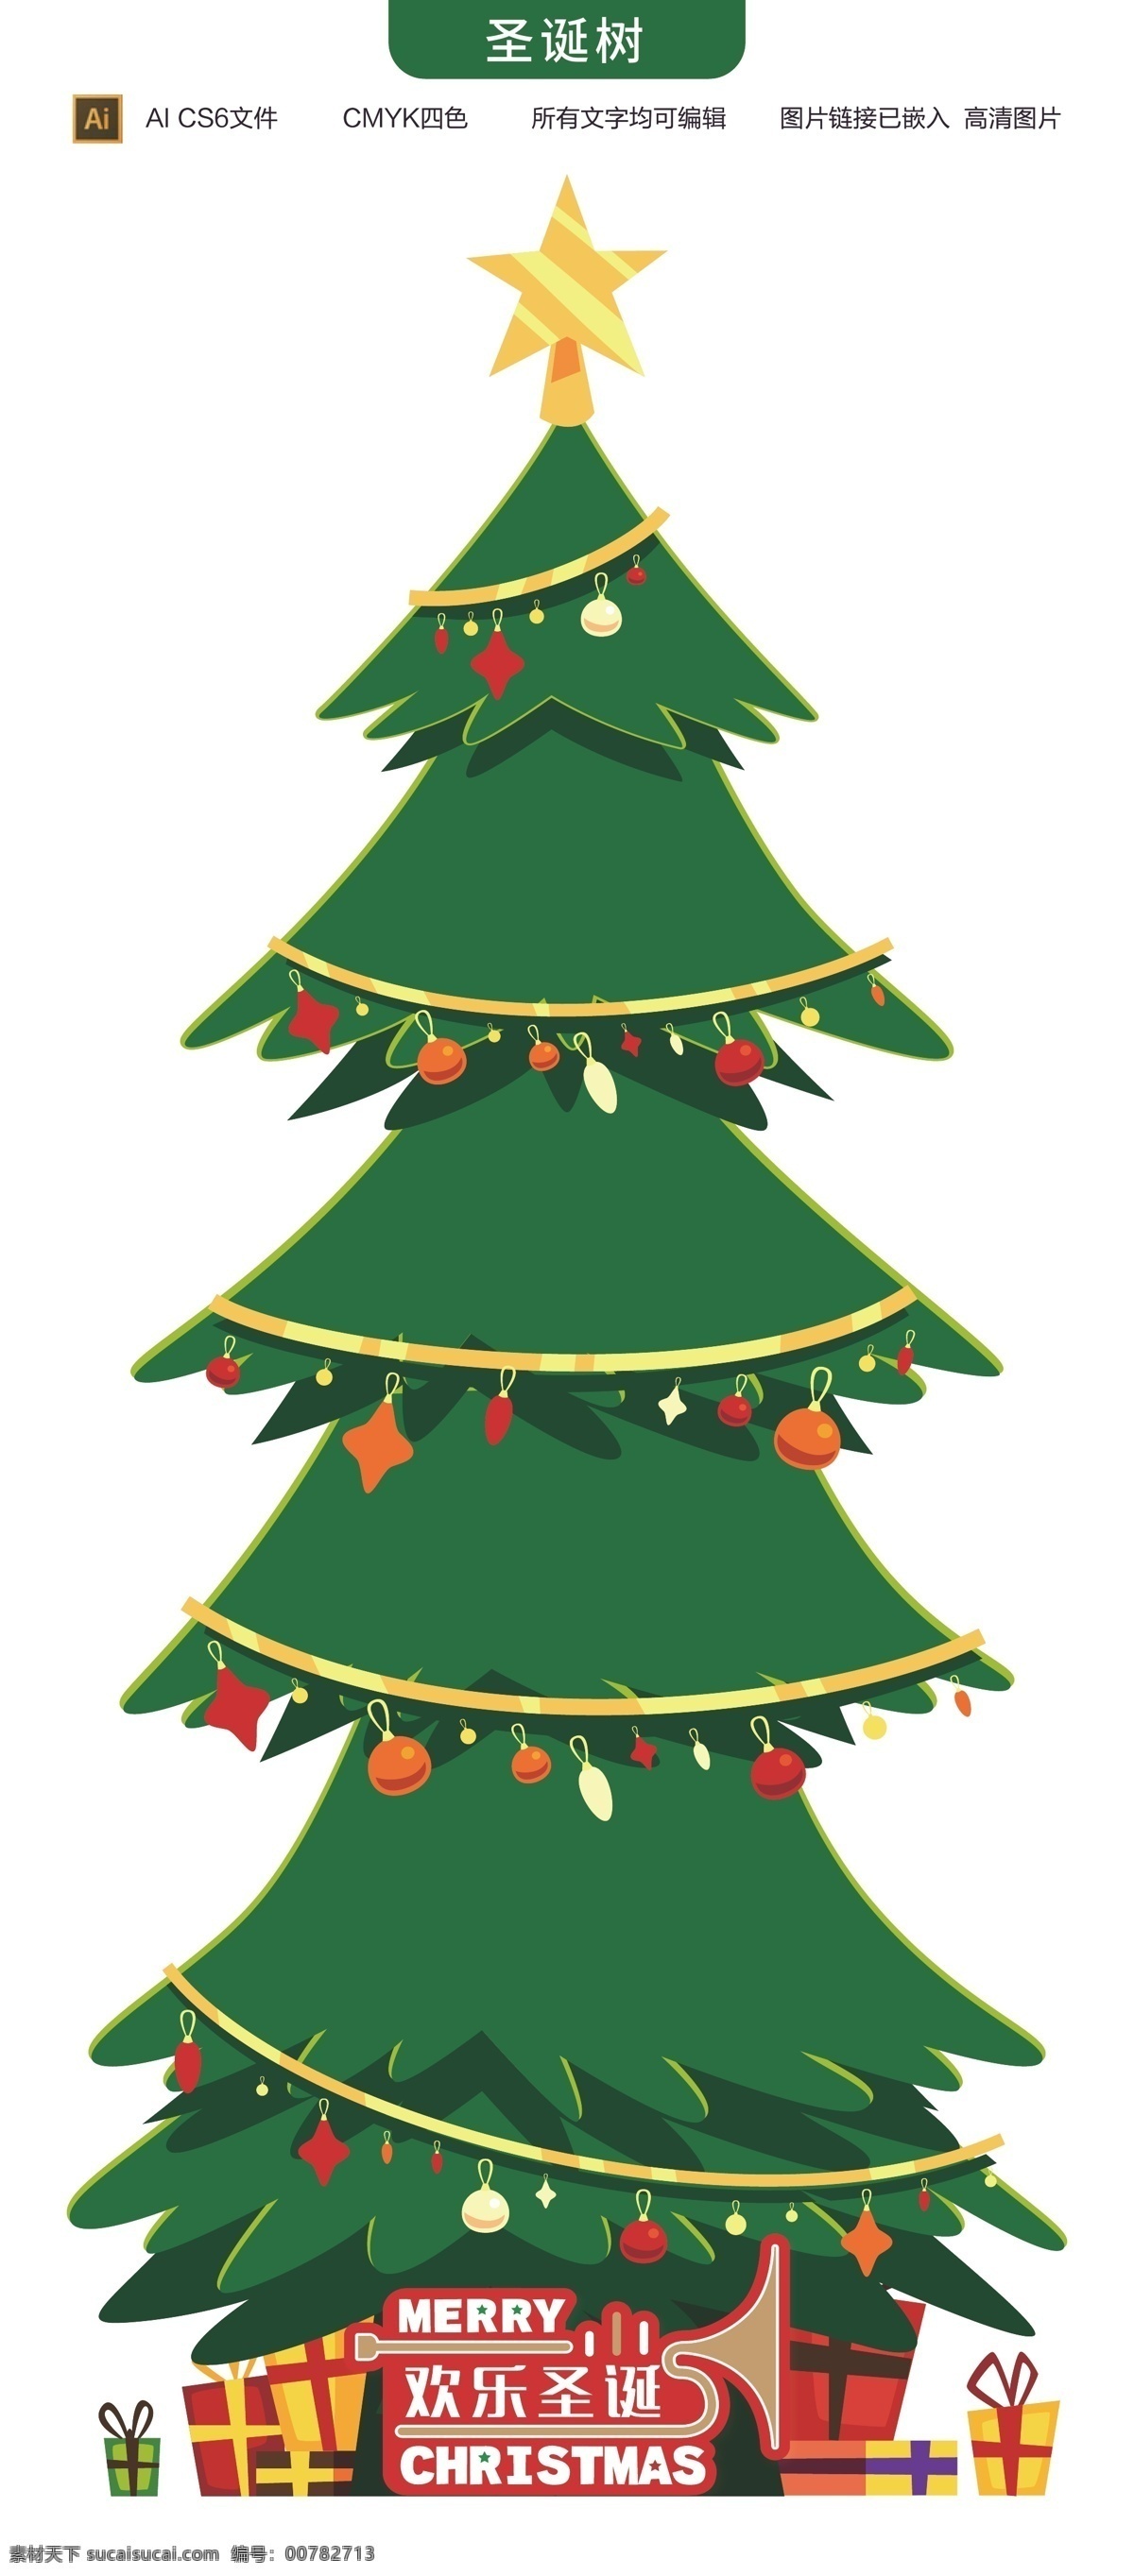 圣诞节素材 卡通圣诞树 圣诞快乐 绿色树 绿色 大气 绿树 可爱圣诞树 各种圣诞树 圣诞树系列 彩树 圣诞节 圣诞素材 矢量树 矢量圣诞树 动漫动画